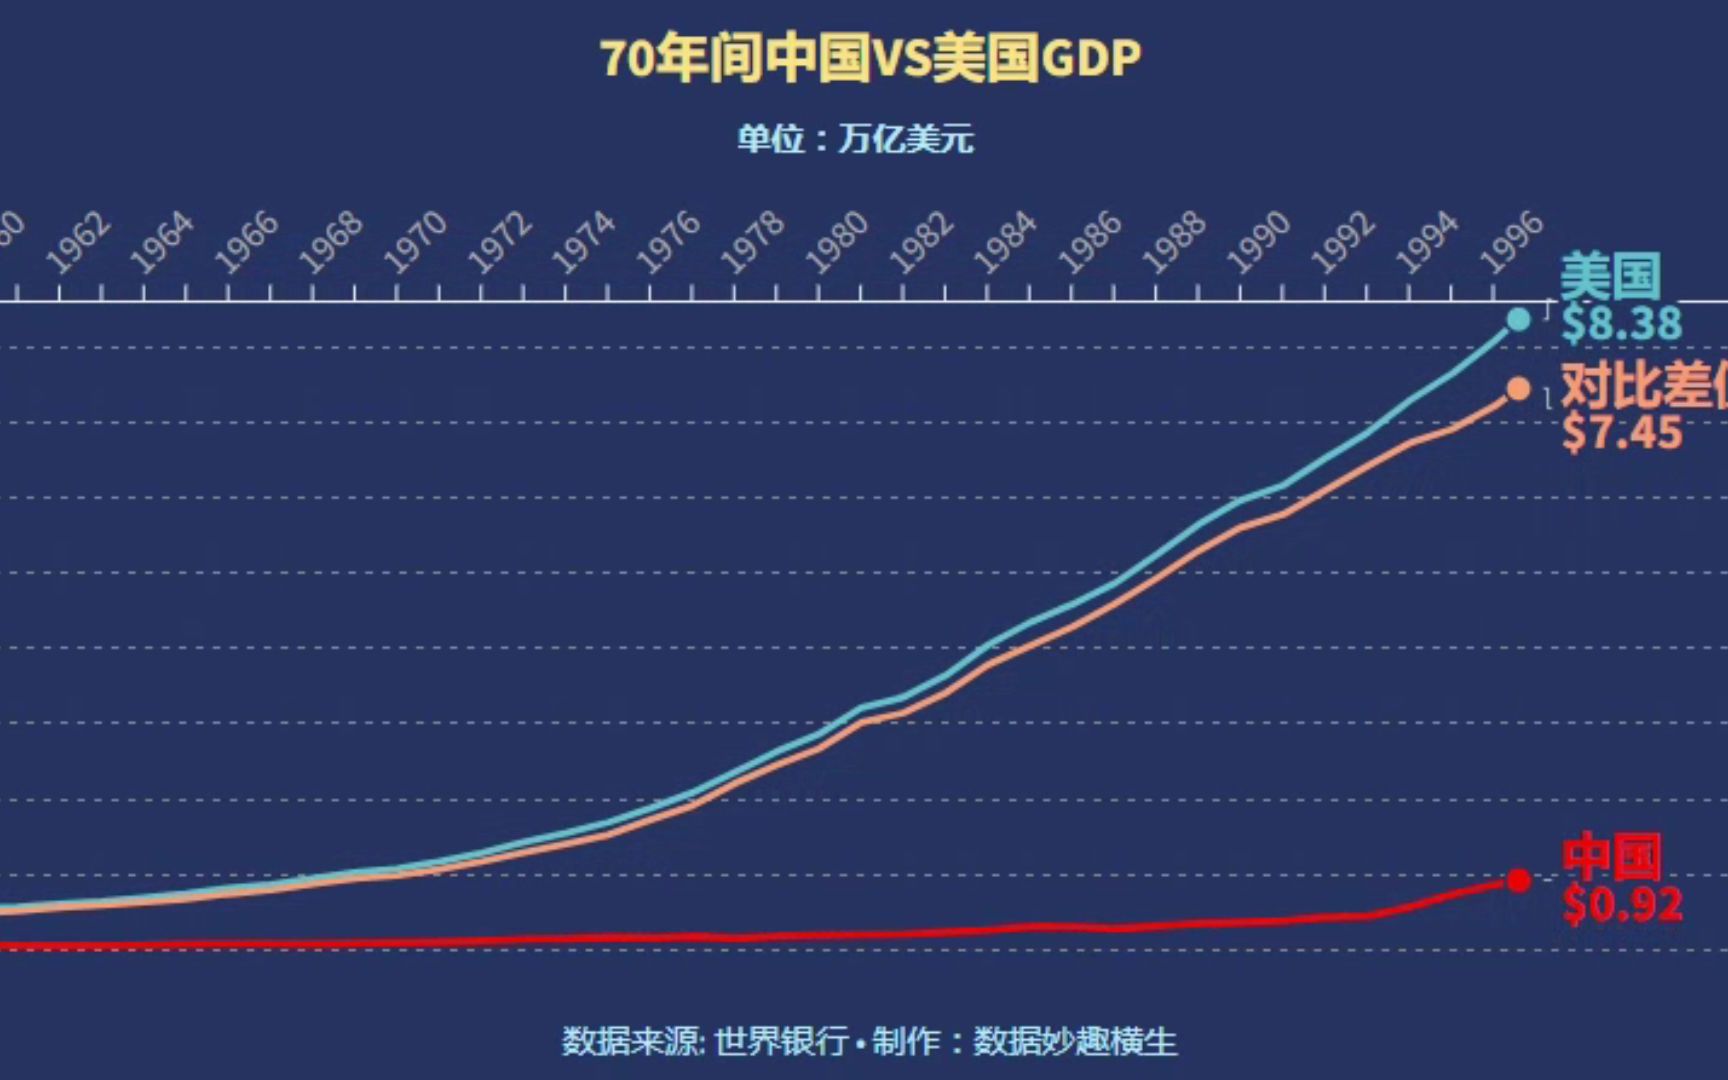 经济,中国经济,美国经济,中国gdp,美国gdp,中国经济增长,中美经济